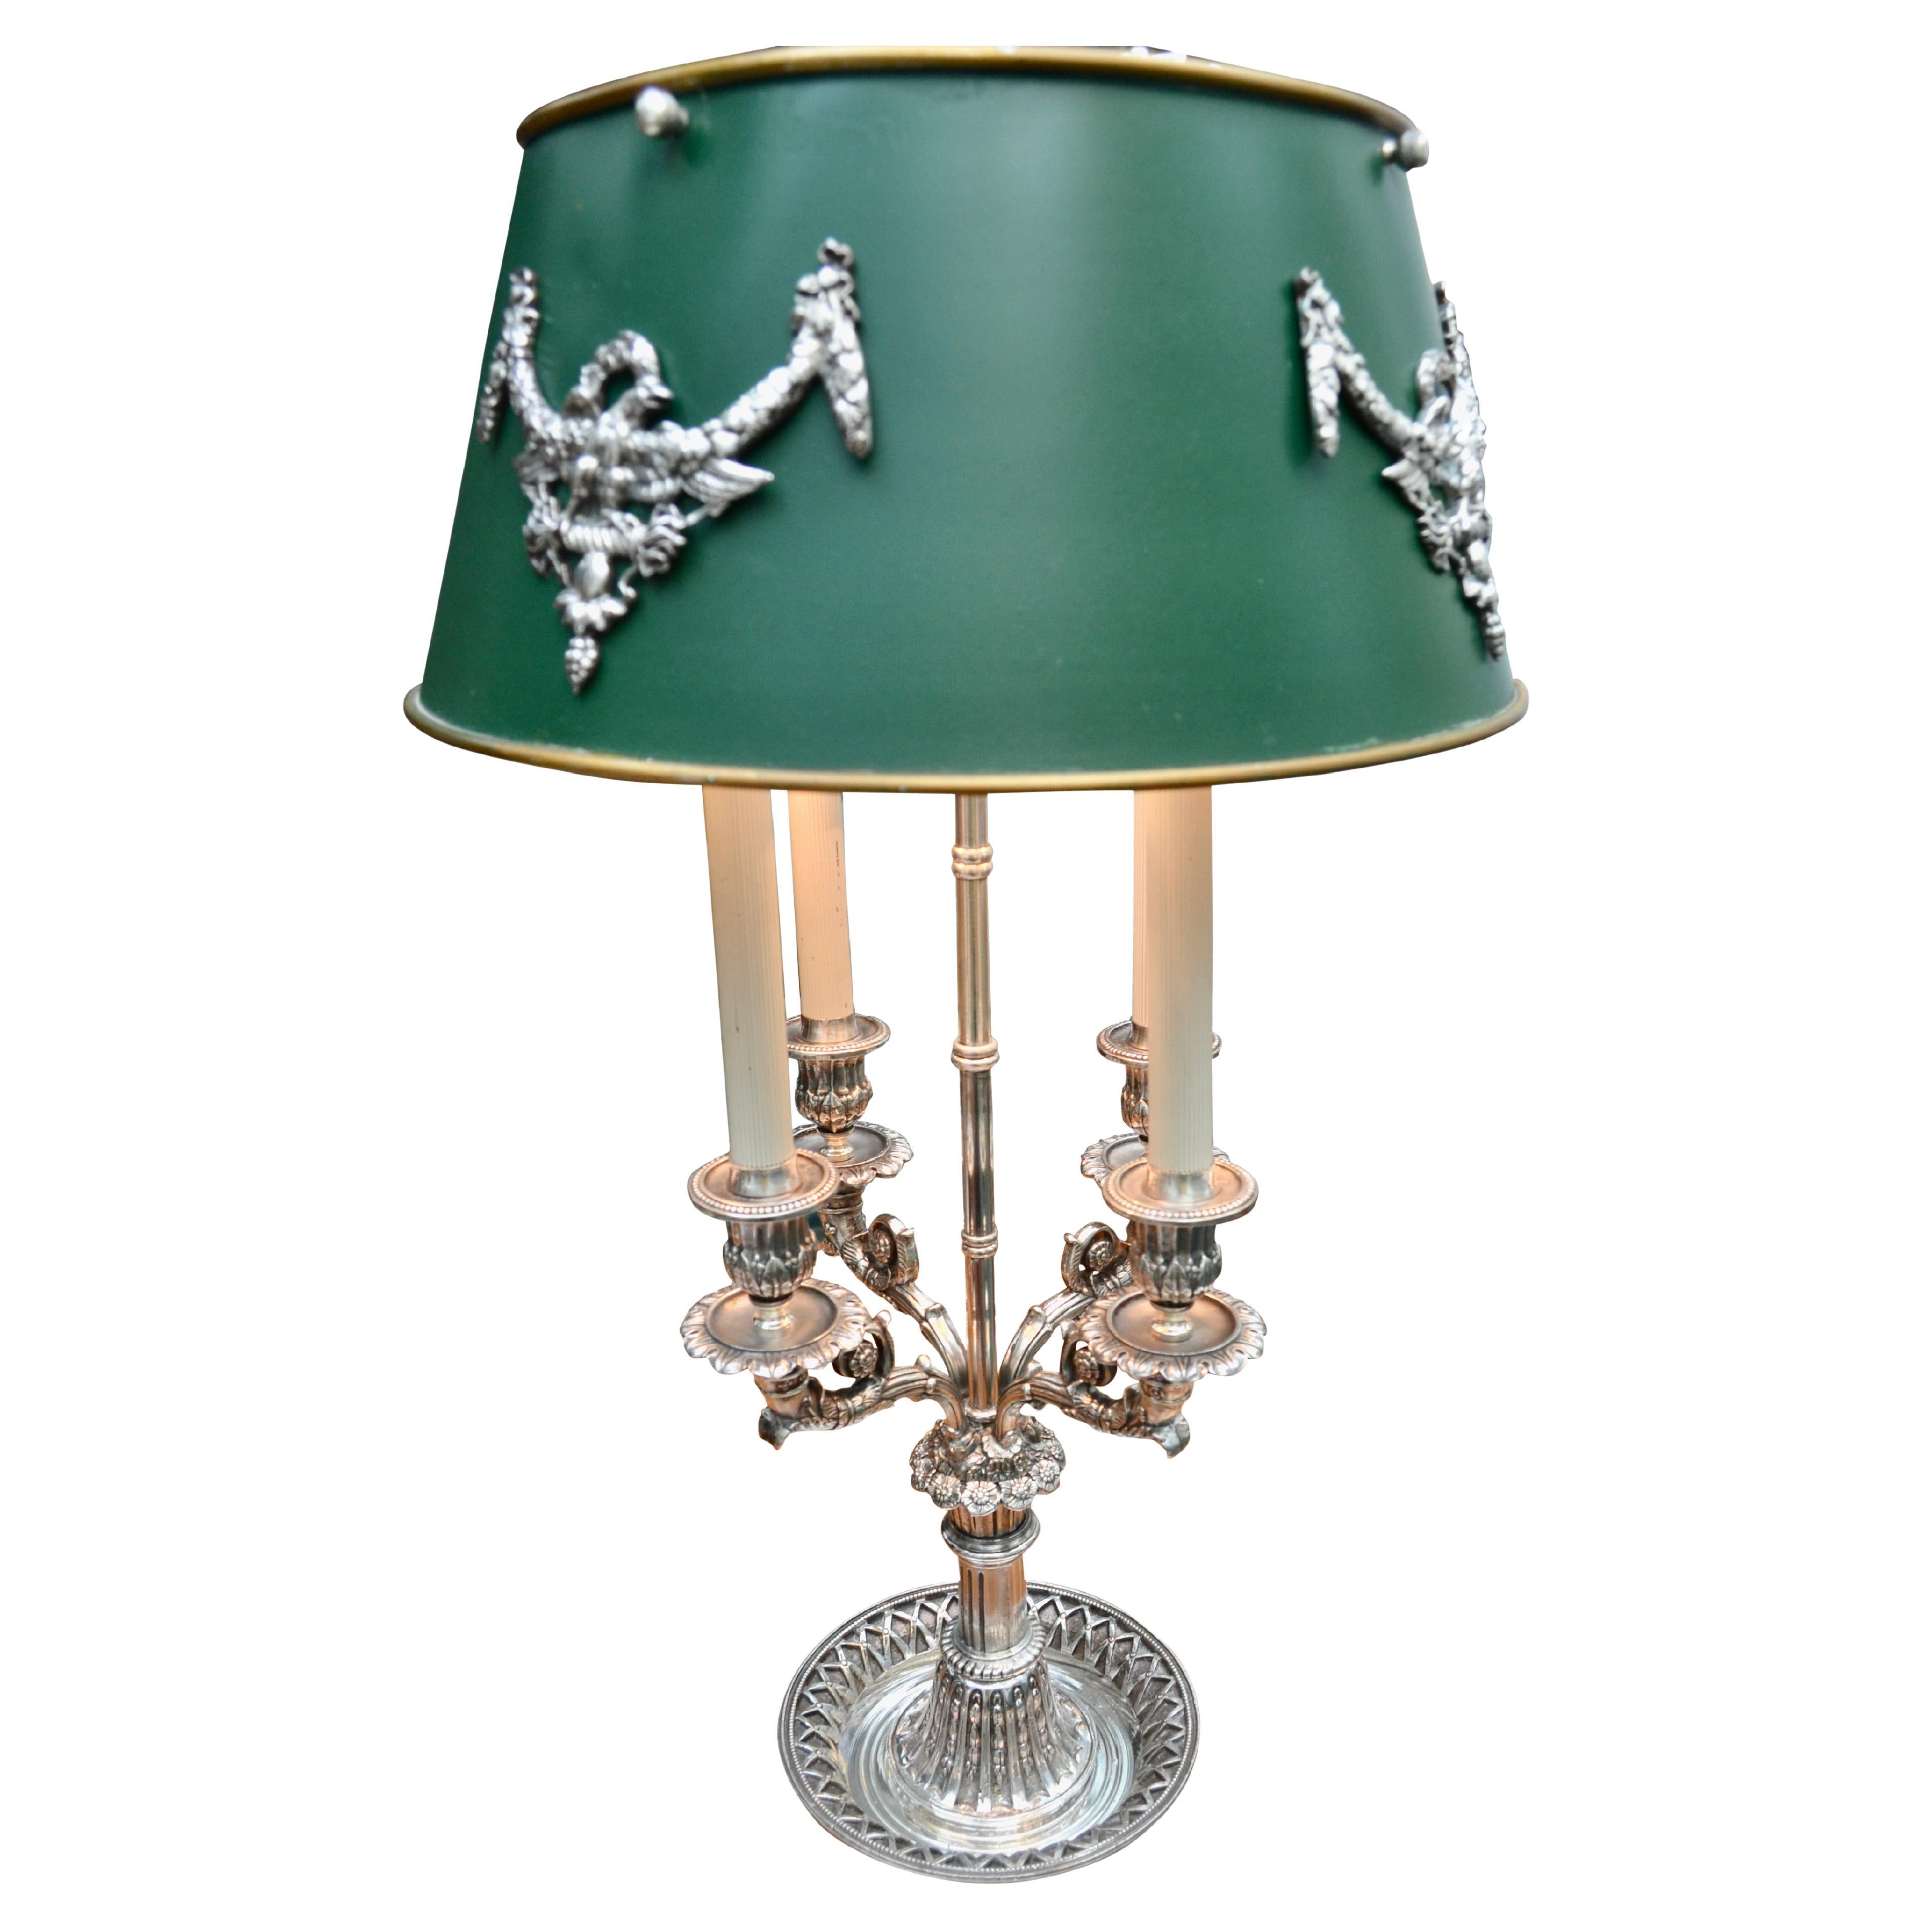 Lampe bouillotte en bronze argenté de style Empire français